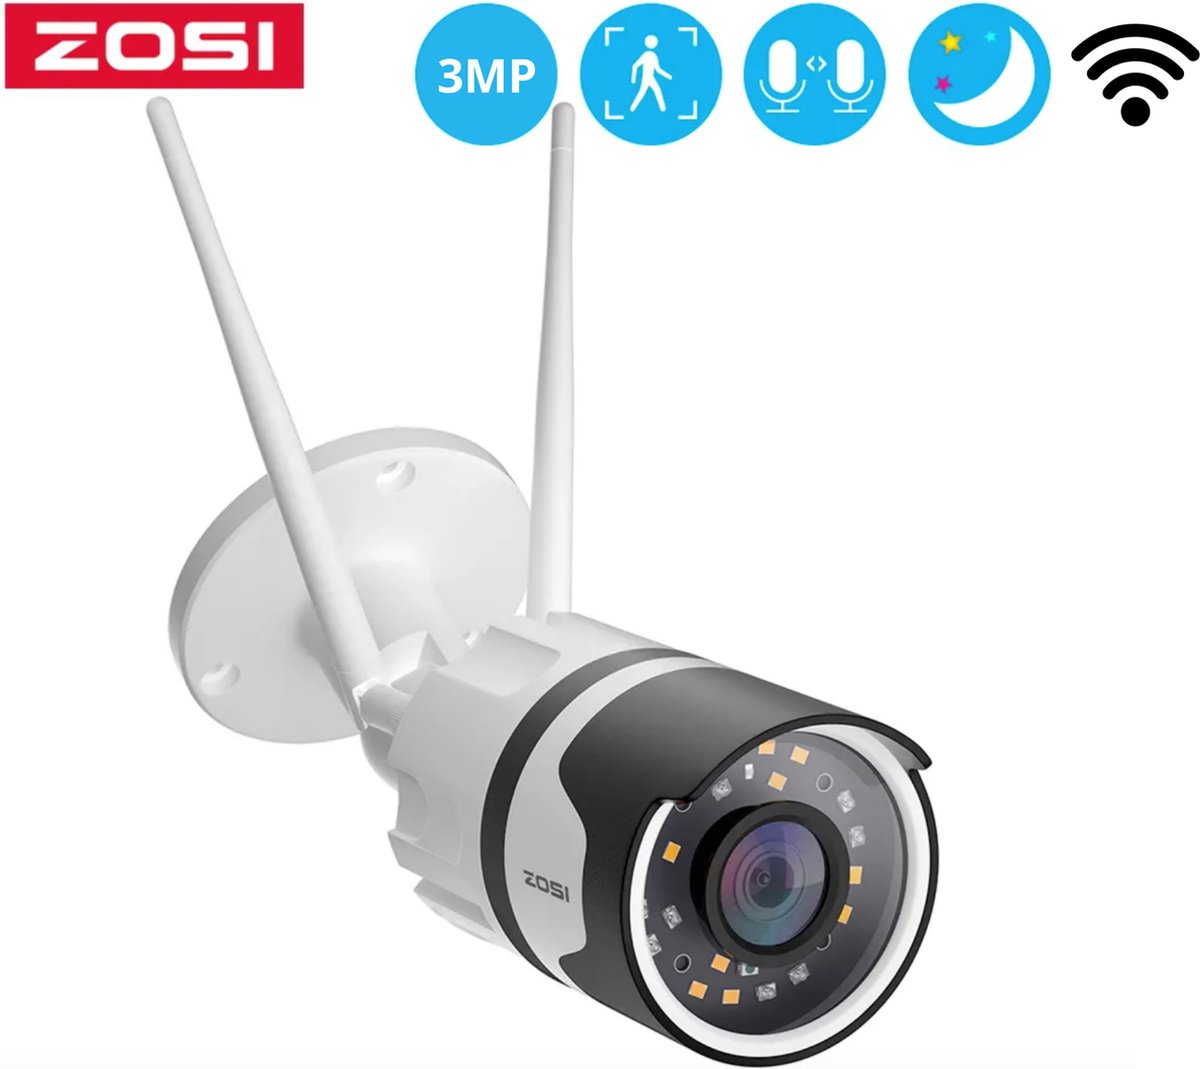 ZOSI Bewakingscamera Voor Buiten - Camera Beveiliging - 2K HD - WiFi - Draadloos - IP Camera - 3MP - Tweezijdige Audio en Microfoon - Nachtvisie - Waterdicht - Met App - Wit